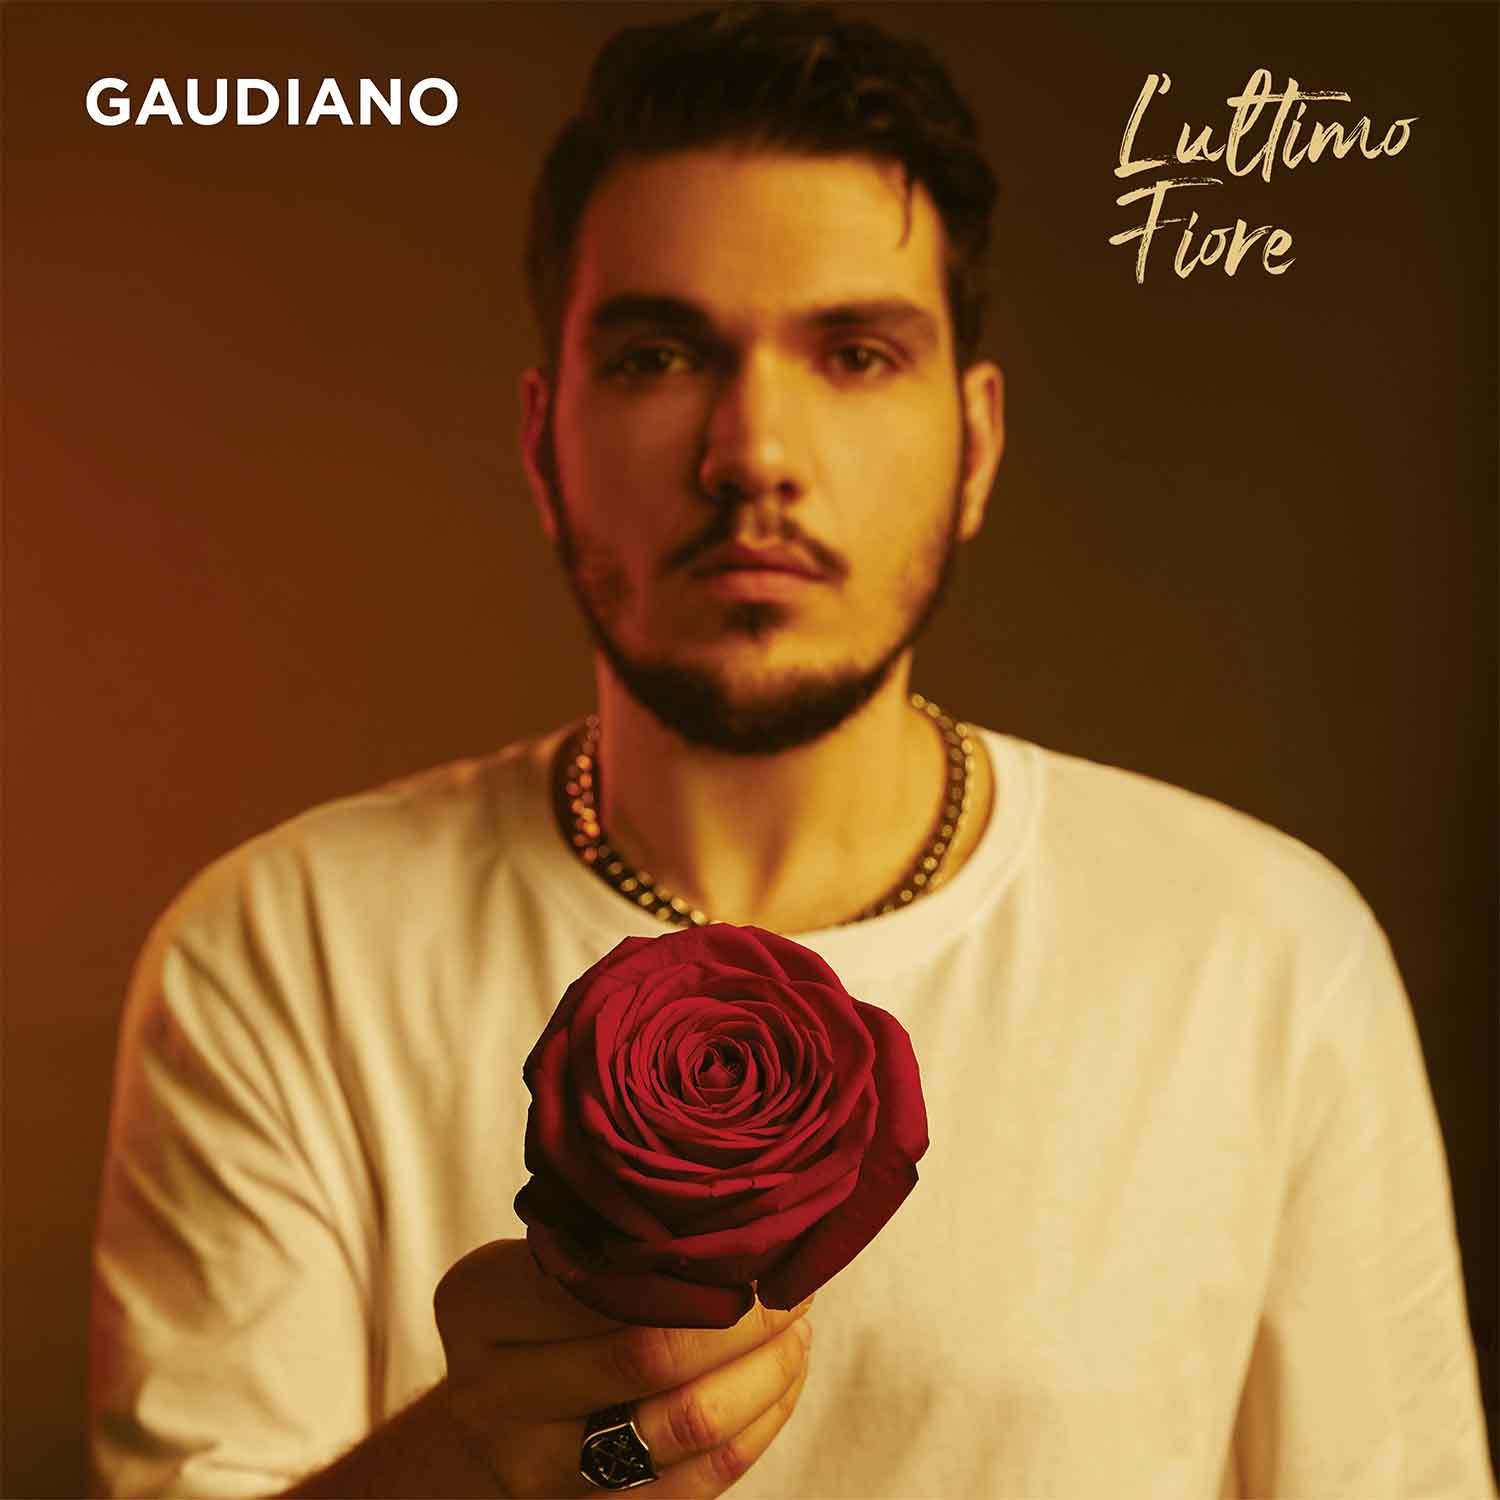 La copertina dell'album L'ultimo fiore del cantante Gaudiano